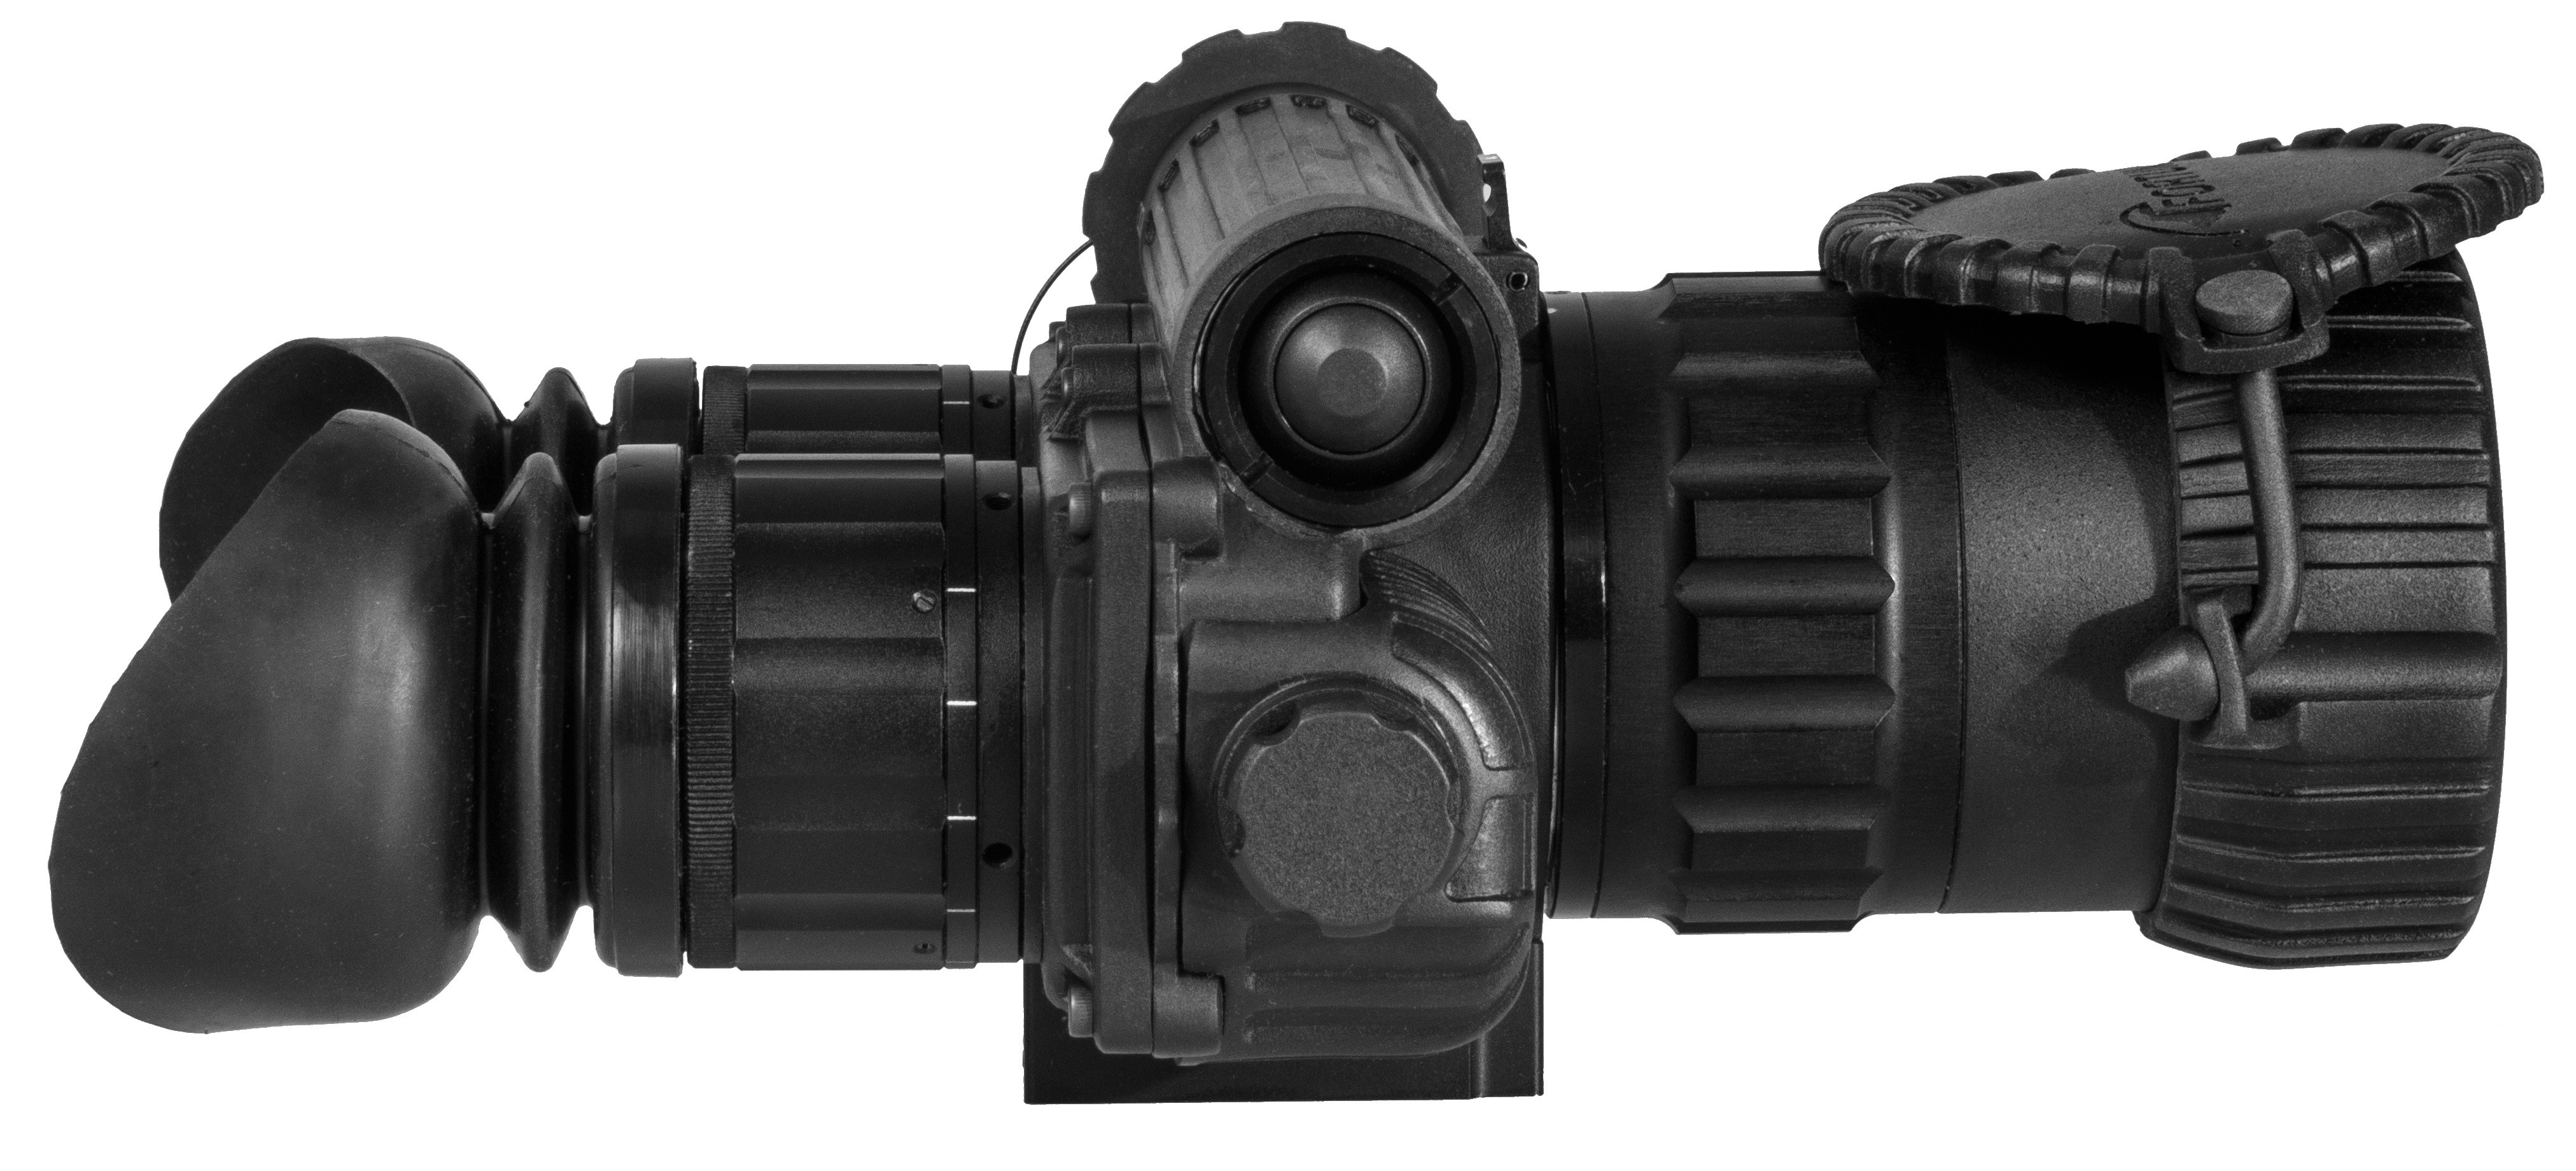 Тепловизионный бинокль Fortuna Binocular 50S6, изображение 2